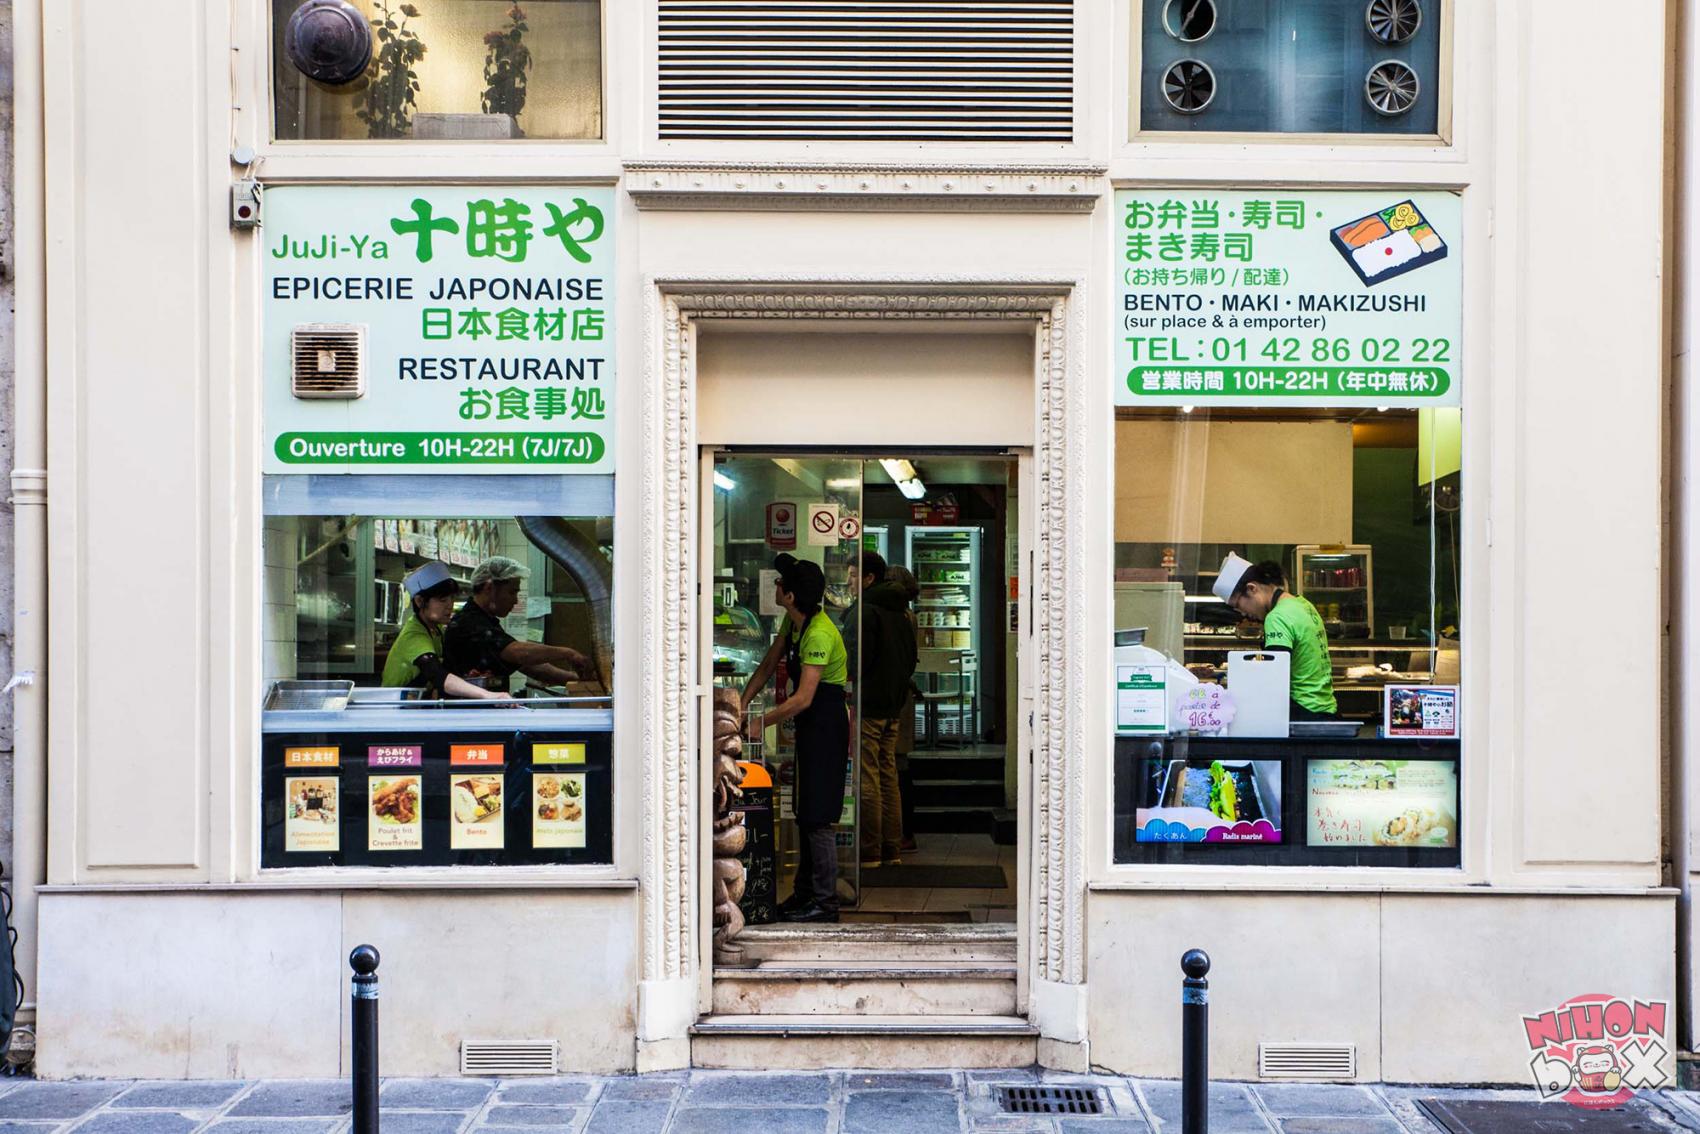 Les commerces d'alimentation japonaise en France